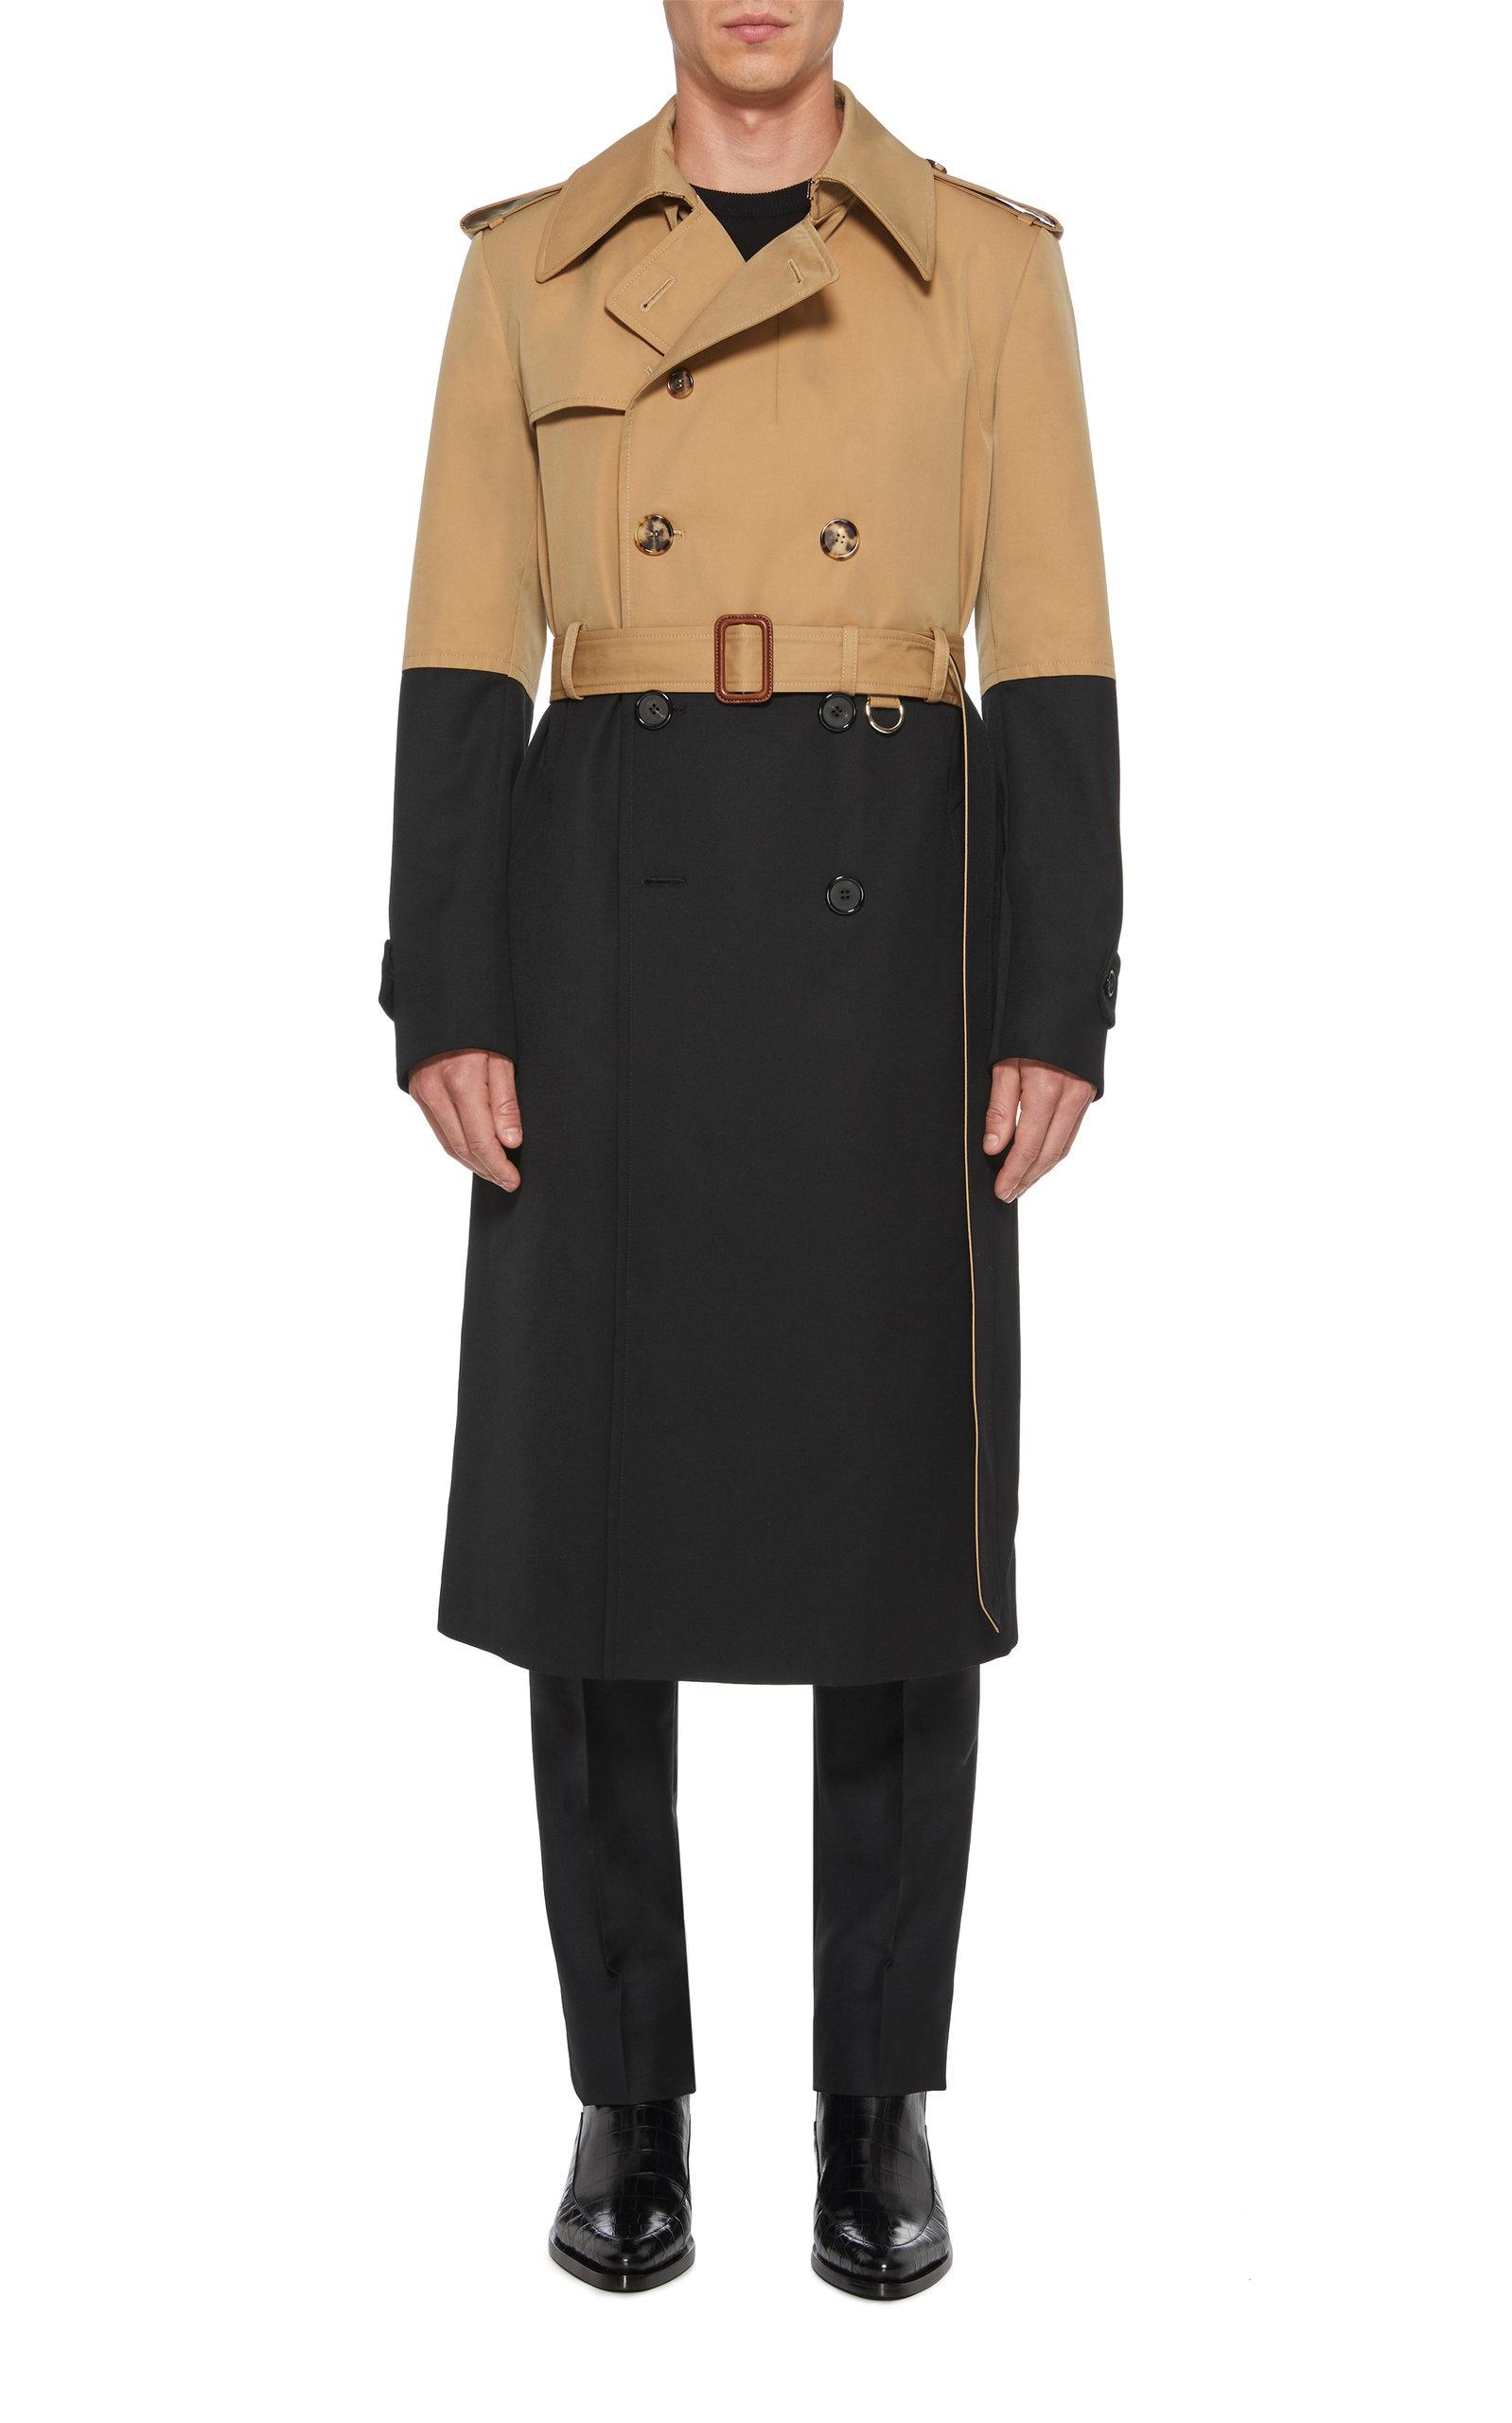 Alexander McQueen Colorblocked Cotton-gabardine Trench Coat for Men - Lyst